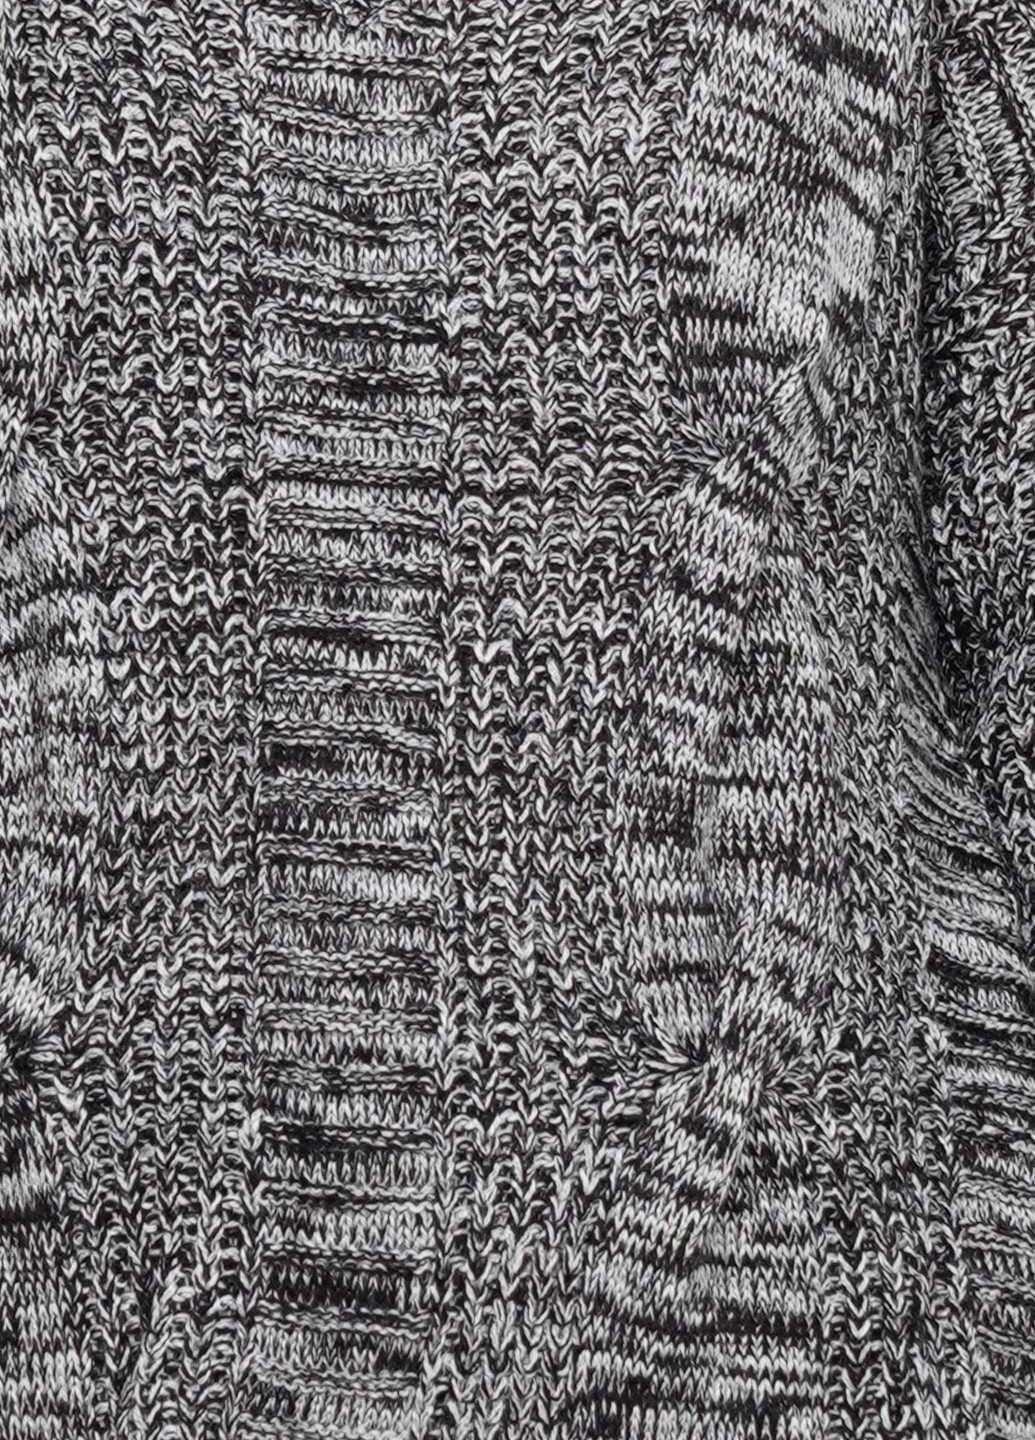 Сірий демісезонний пуловер пуловер CHD